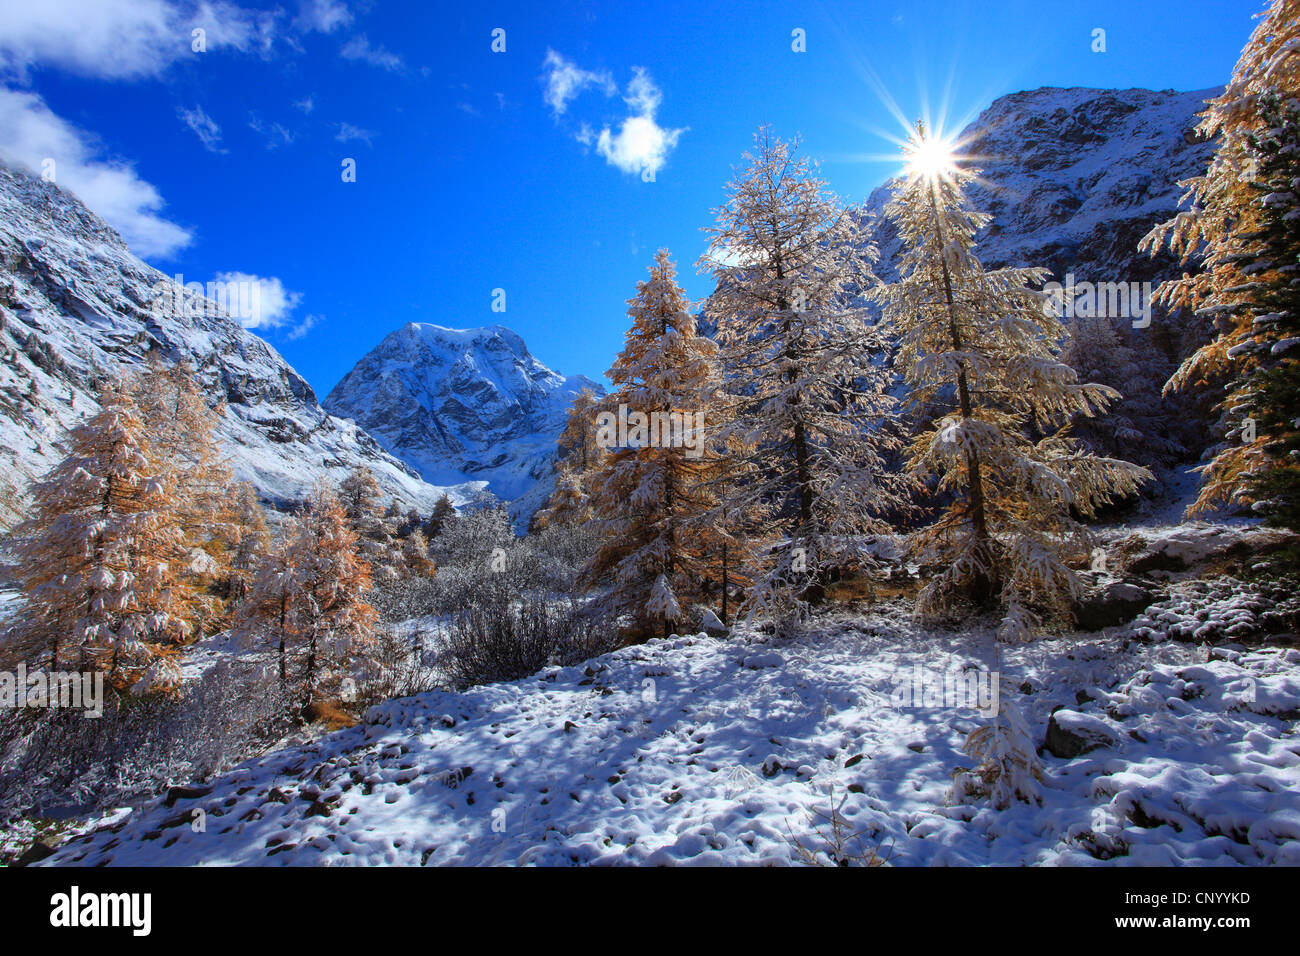 Paisajes de montaña con nieve Monte Collon, valle de Arolla, Valais, Suiza Foto de stock